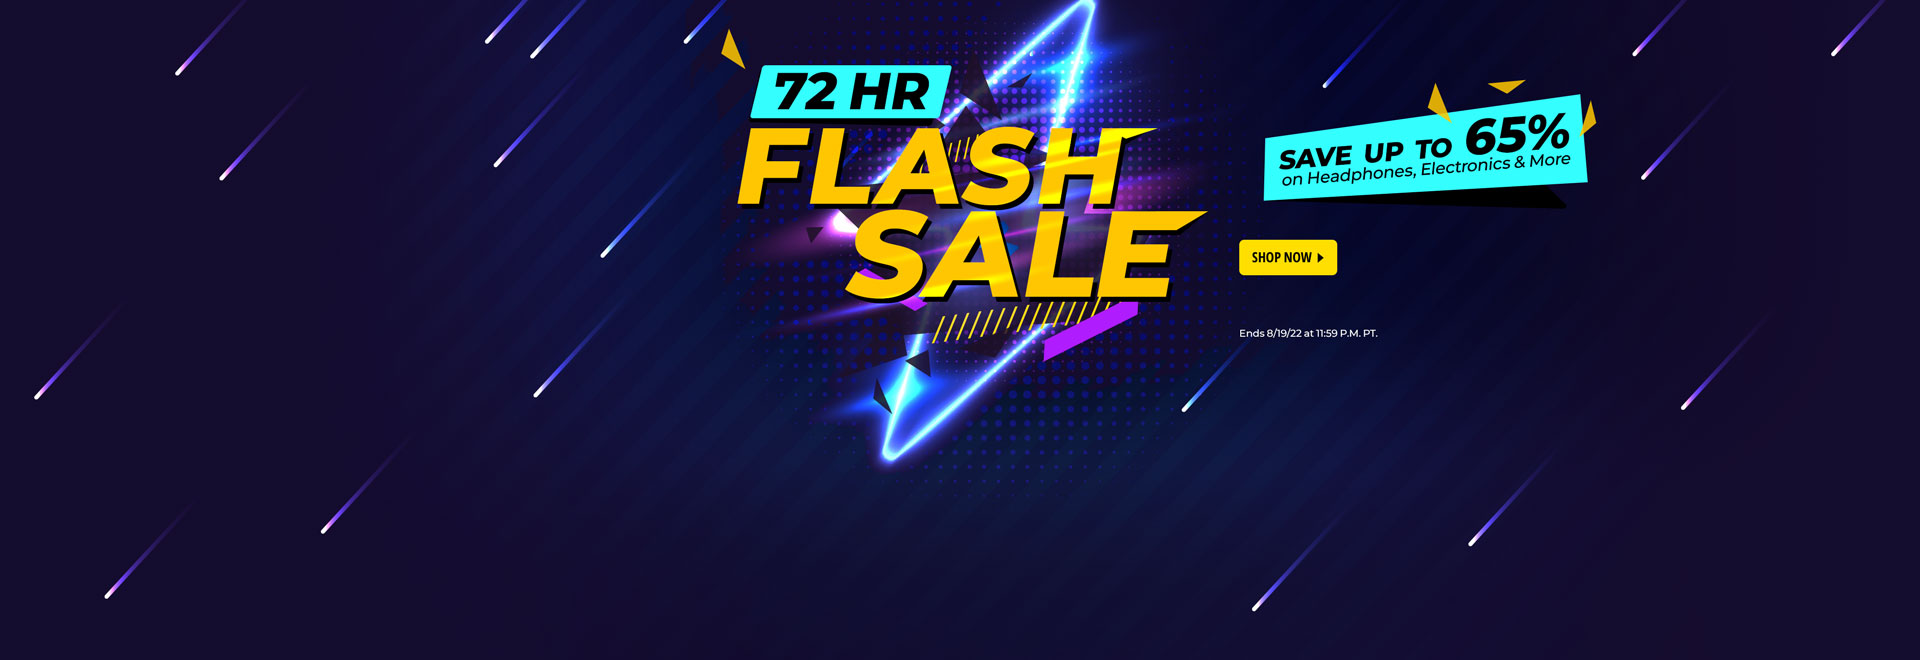 72 HR Flash Sale